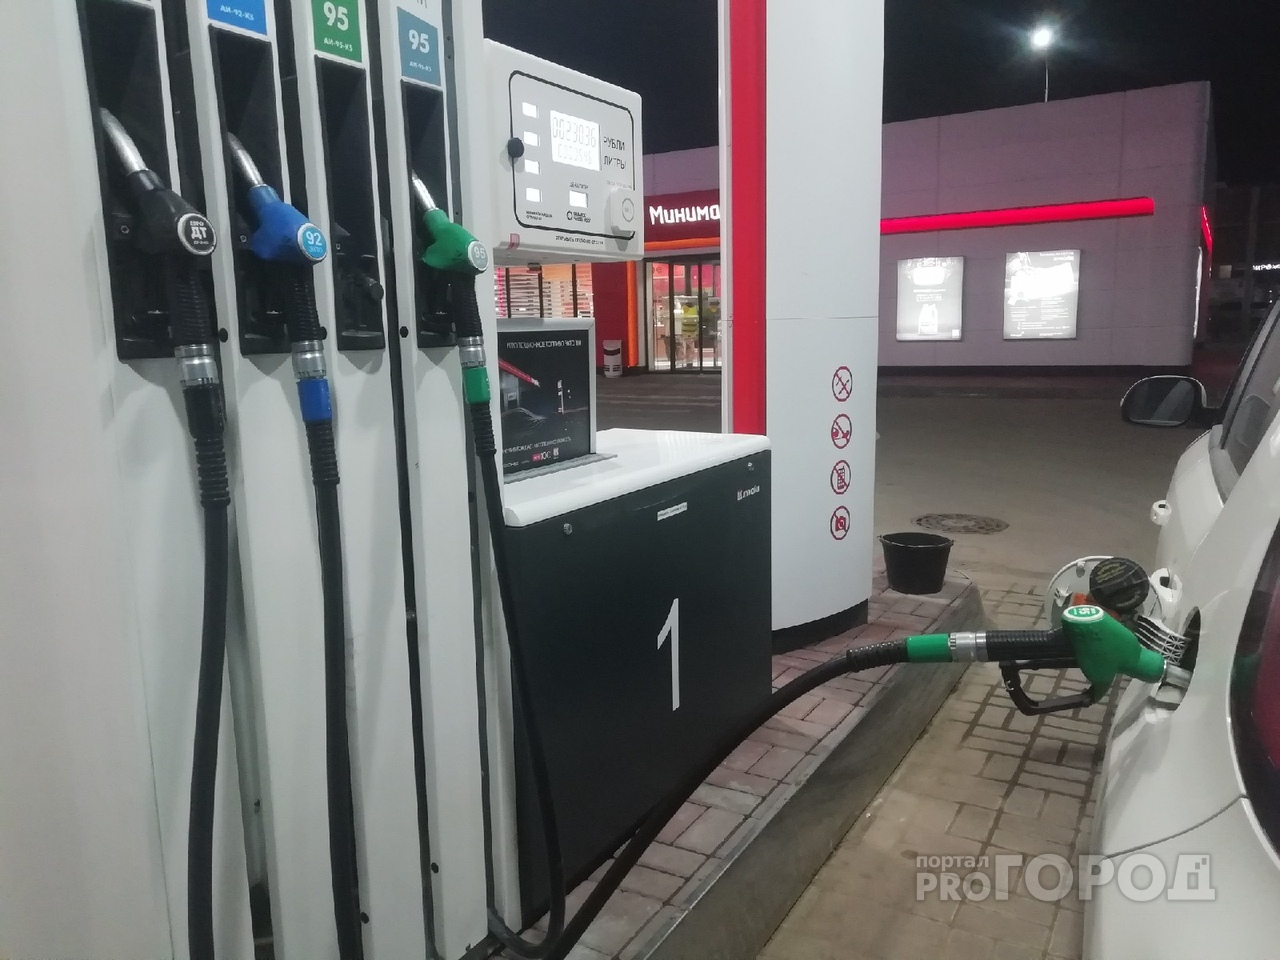 На сколько выросли цены на топливо в Йошкар-Оле?